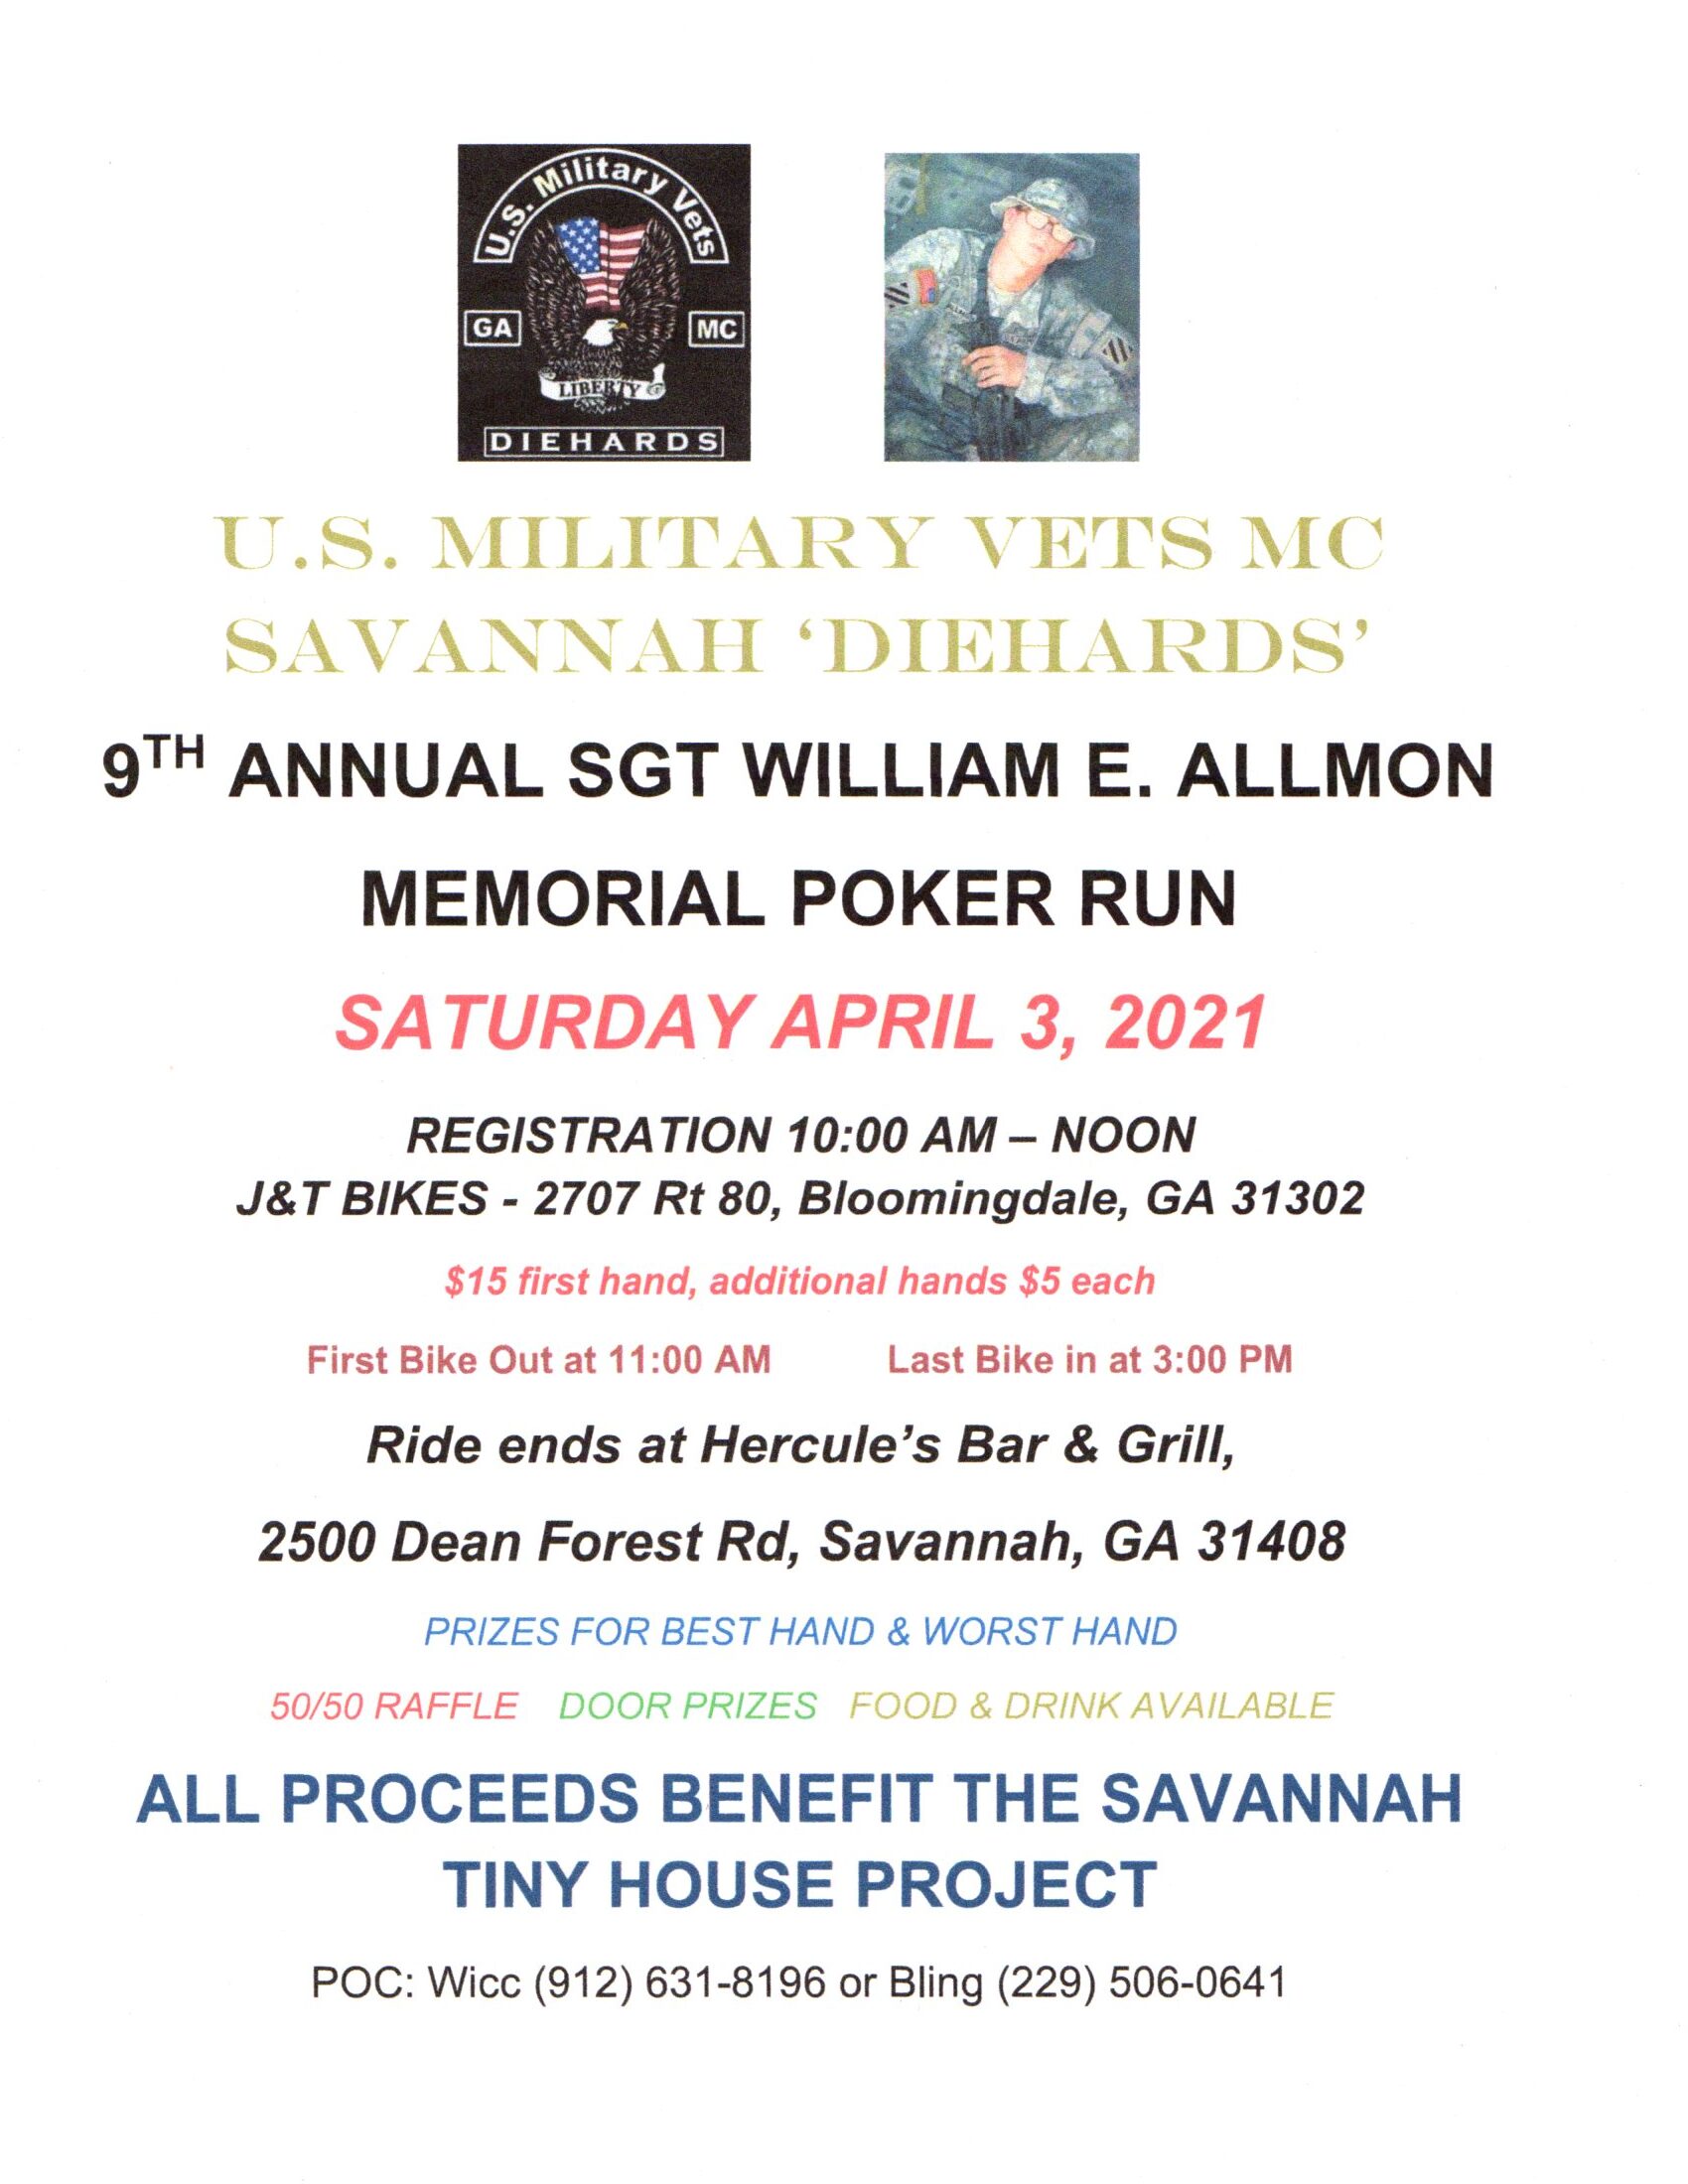 USMVMC SAVANNAH DIEHARDS - 9th Annual Sgt. William E. Allmon Memorial Poker Run @ J&T Bikes | Bloomingdale | Georgia | United States